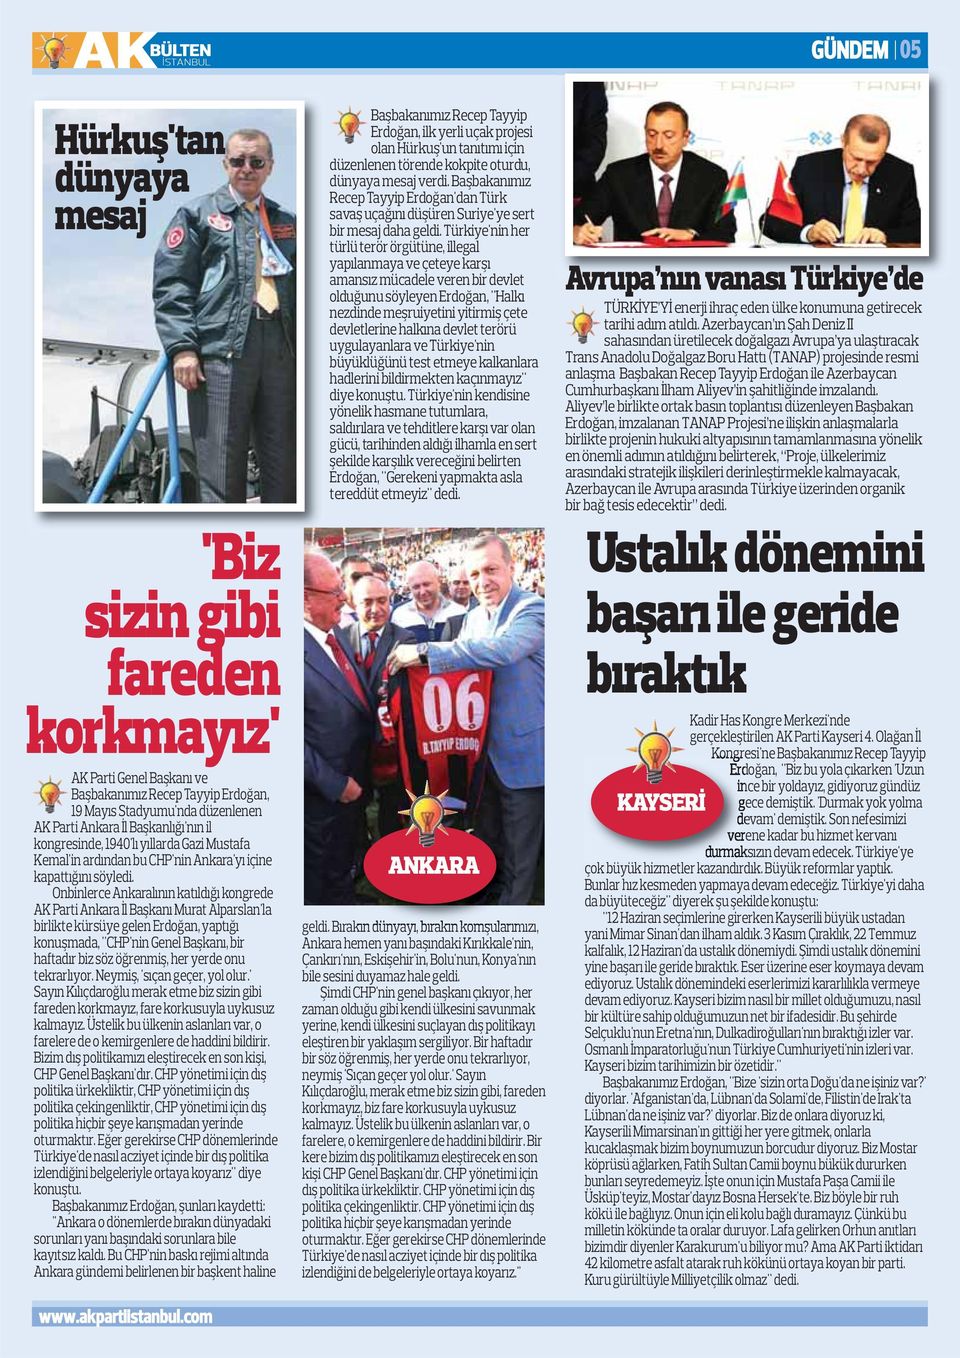 Onbinlerce Ankaralının katıldığı kongrede AK Parti Ankara İl Başkanı Murat Alparslan'la birlikte kürsüye gelen Erdoğan, yaptığı konuşmada, "CHP'nin Genel Başkanı, bir haftadır biz söz öğrenmiş, her